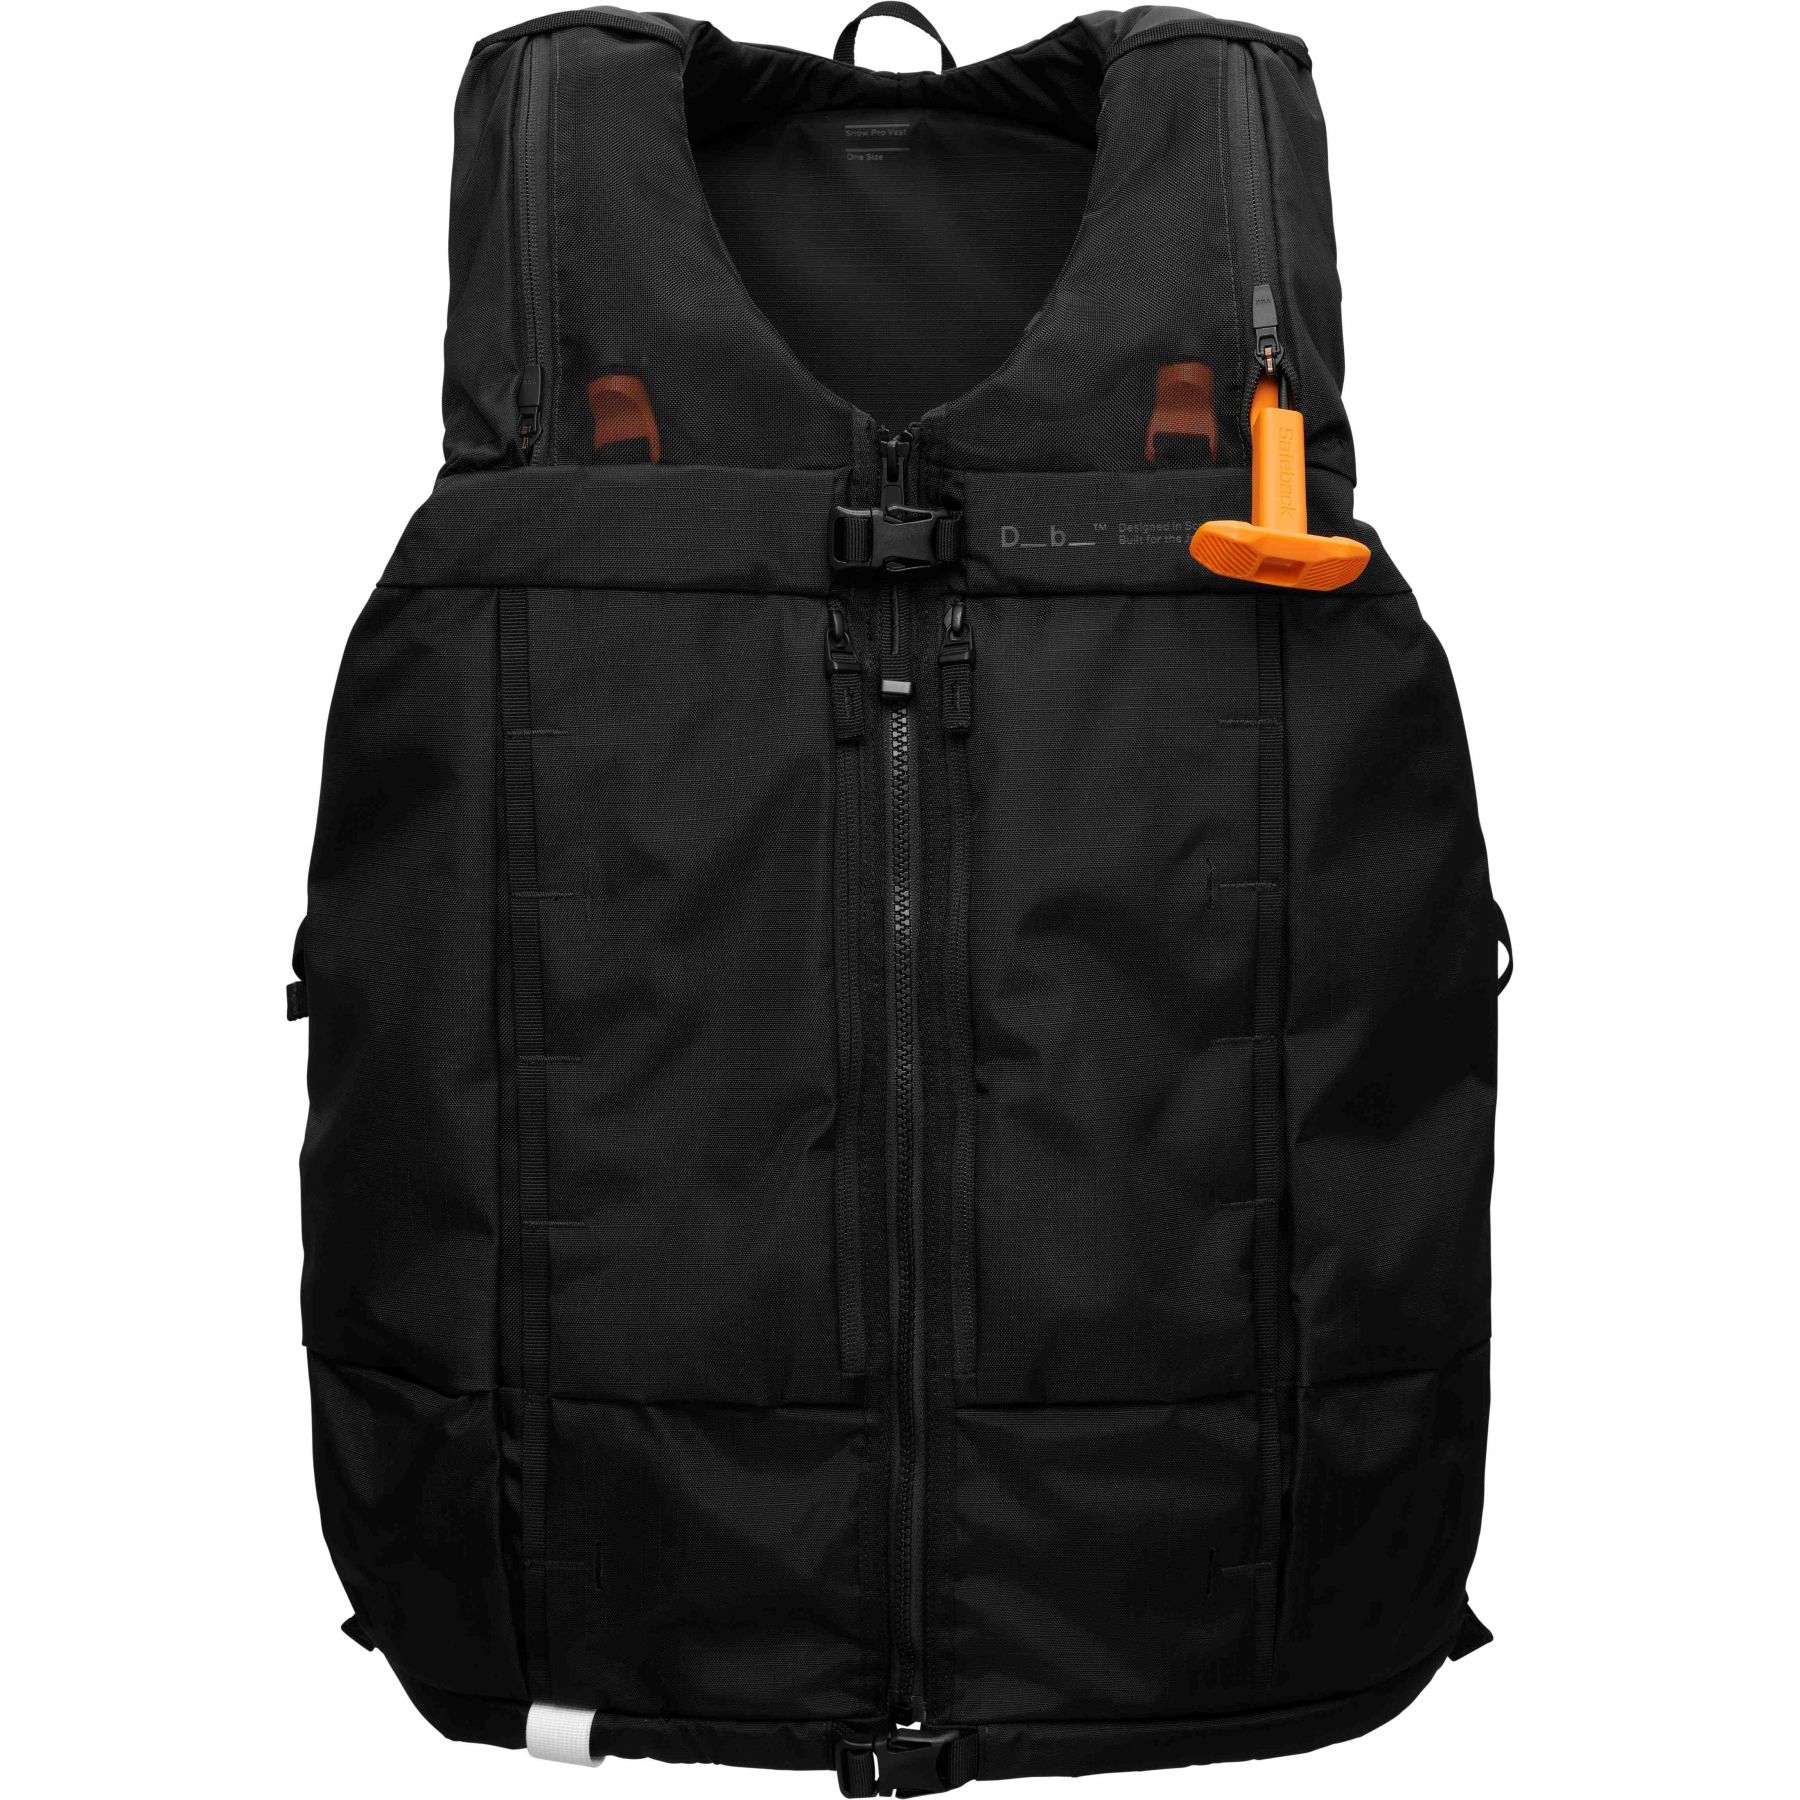 Brug Db Snow Pro Vest med Safeback SBX, 8L, black out til en forbedret oplevelse